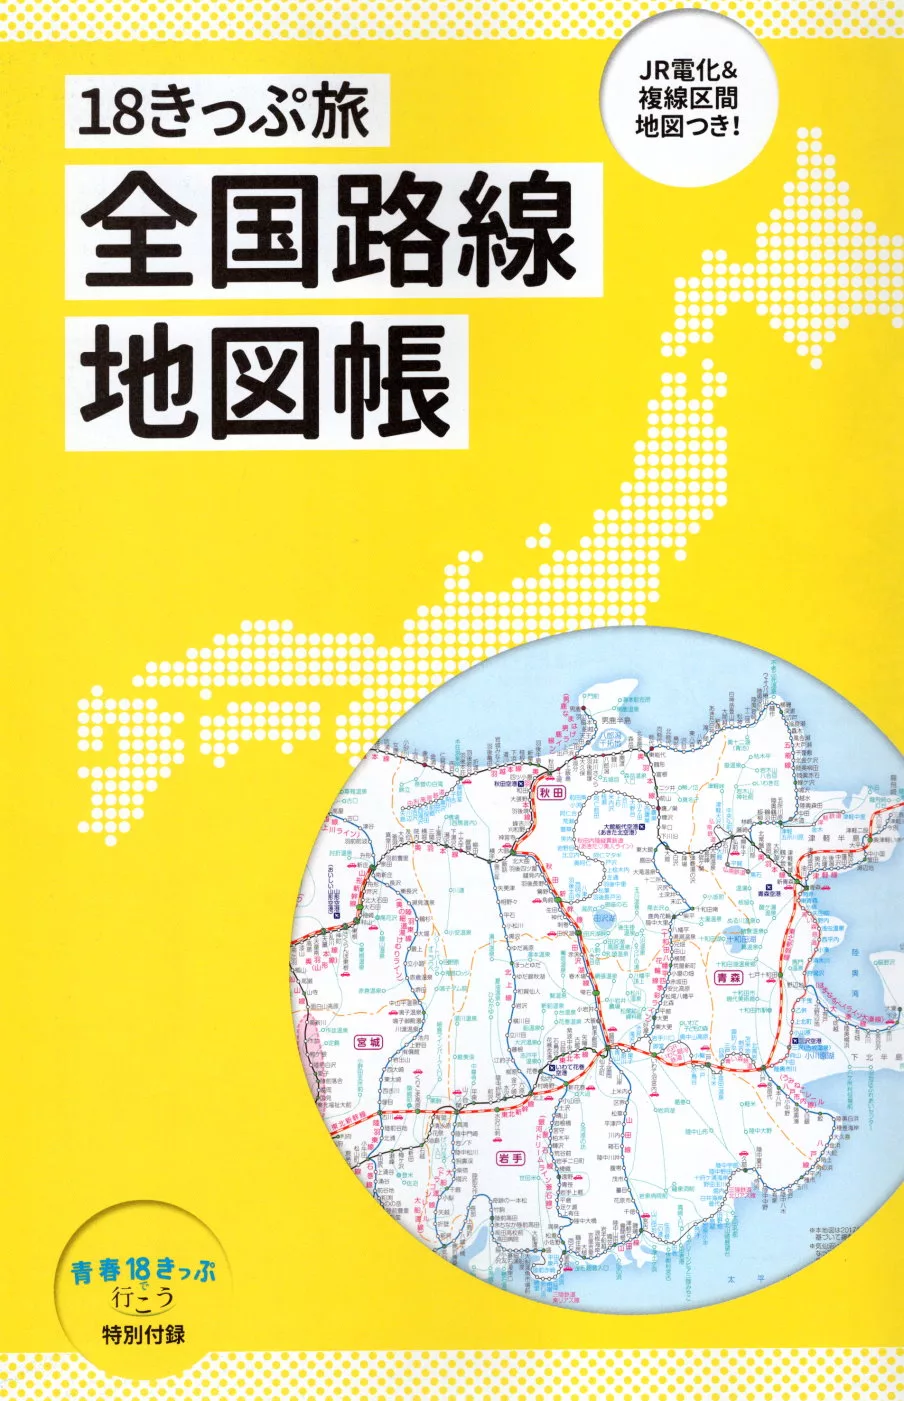 特別附錄：青春18旅全日本路線地圖冊